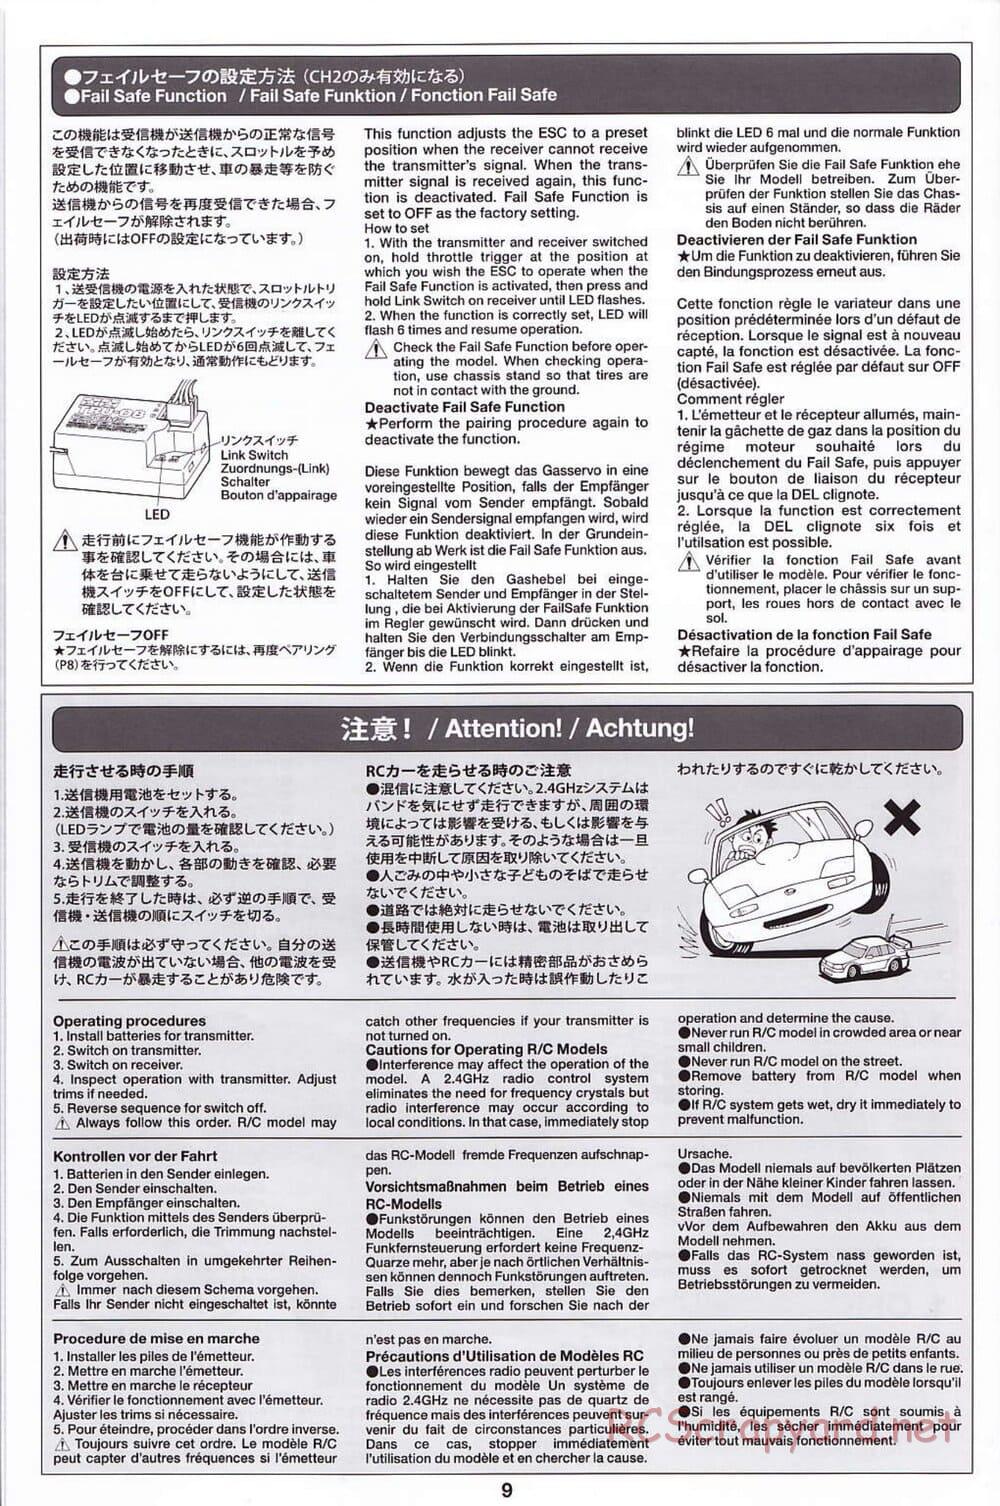 Tamiya - SA TT-02 - Radio - Manual - Page 9